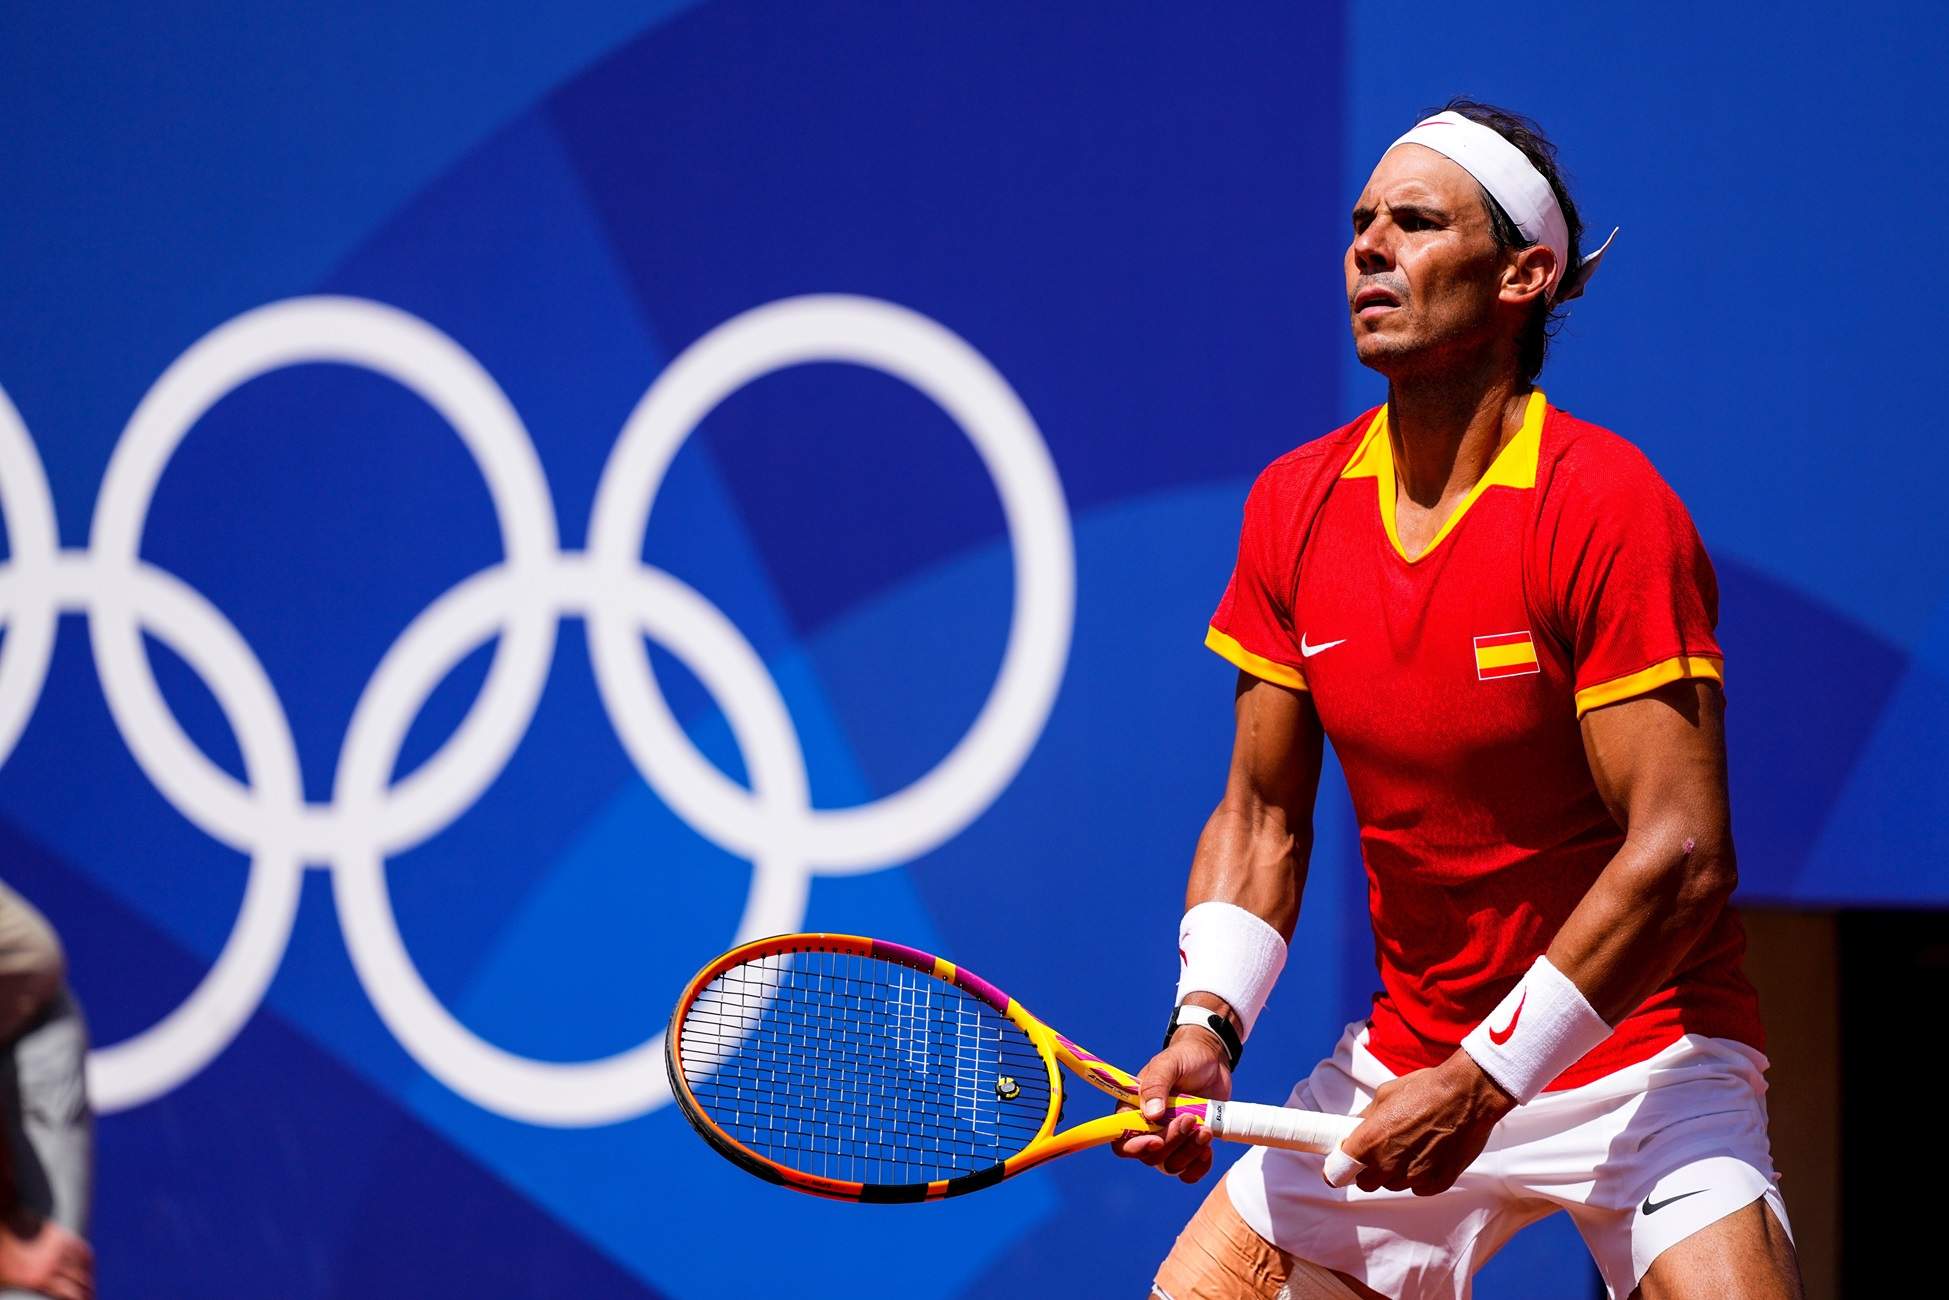 La derrota de Rafa Nadal contra Djokovic marca la tercera jornada de los Juegos Olímpicos de París 2024